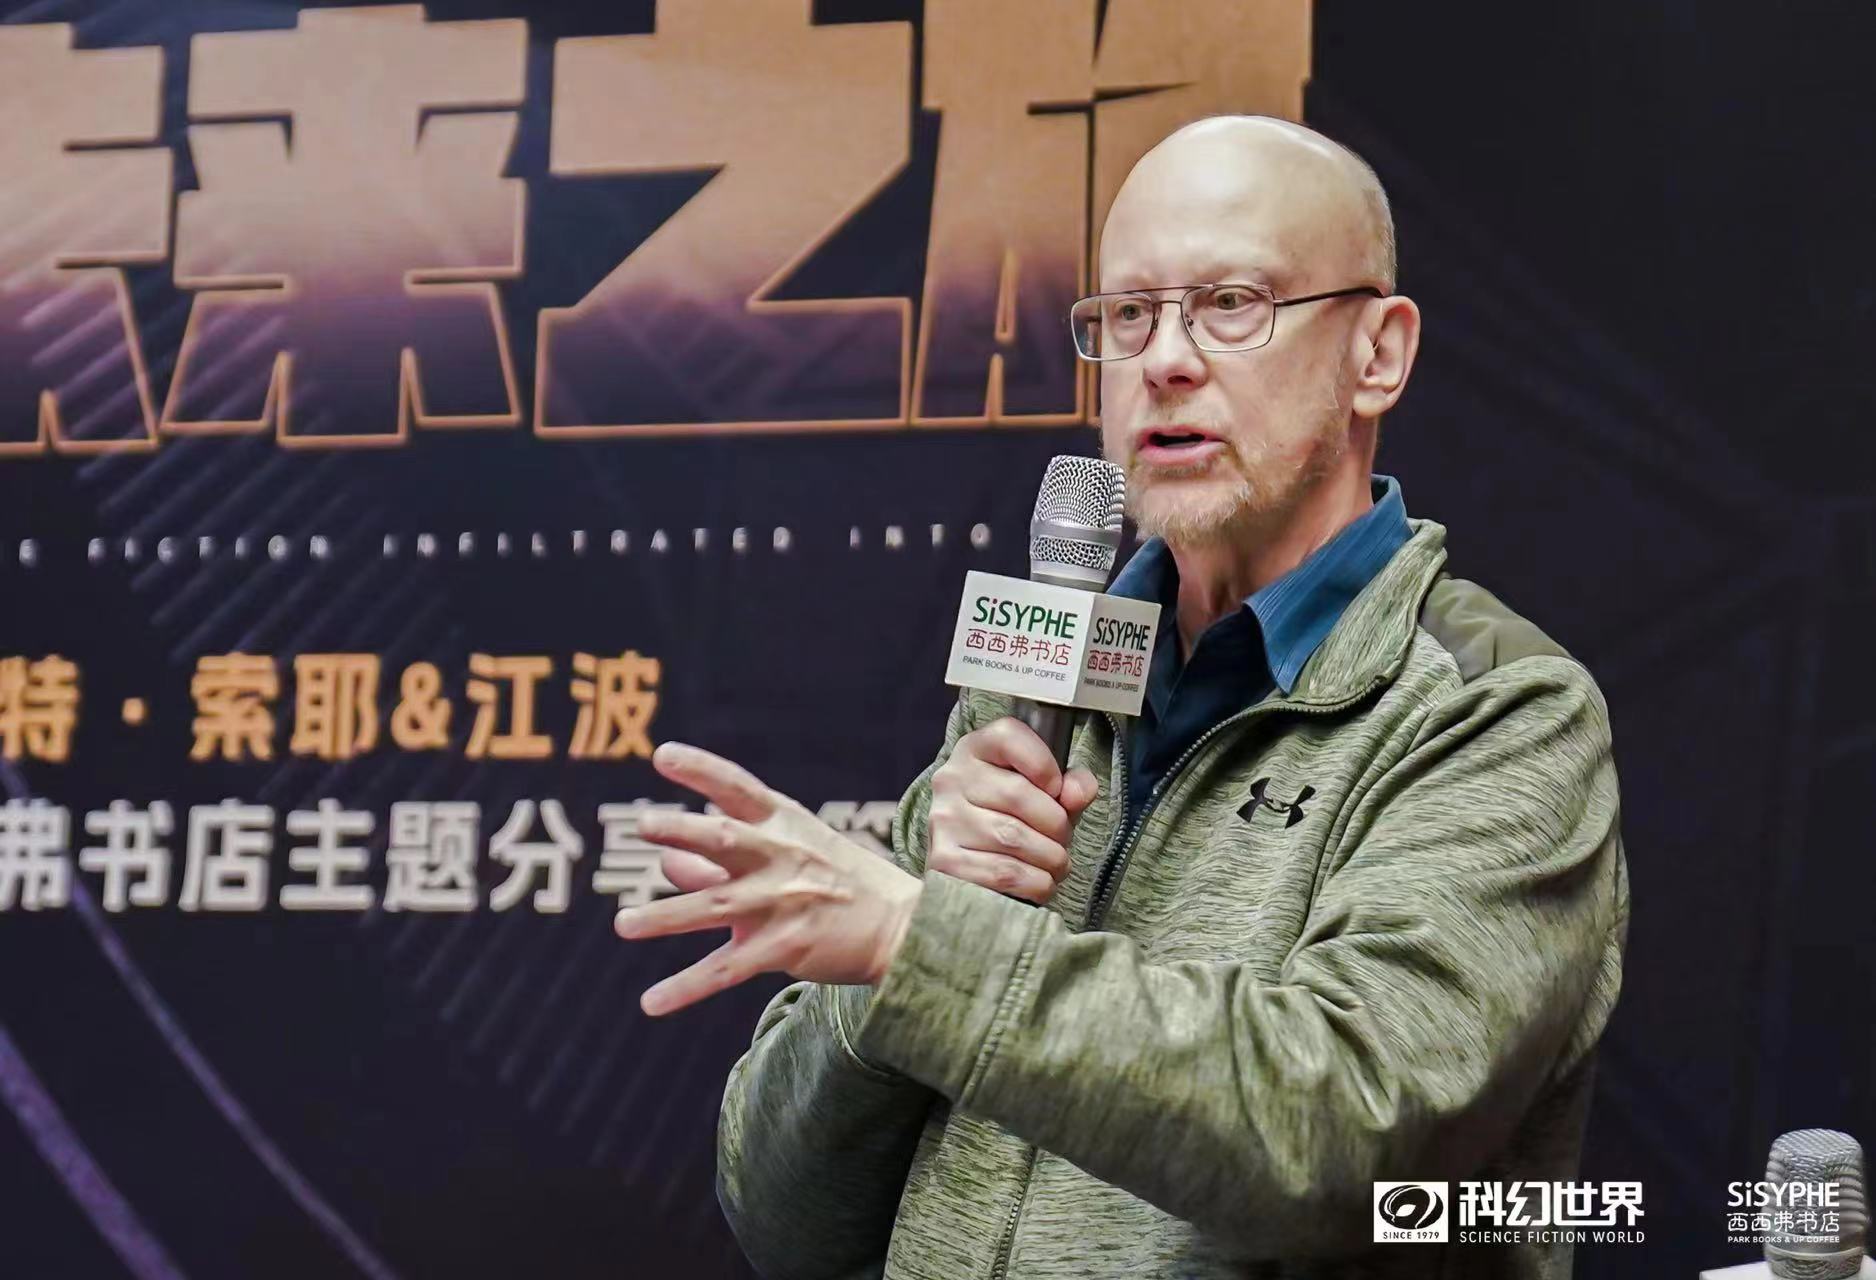 索耶在上海与中国作家江波对谈活动中